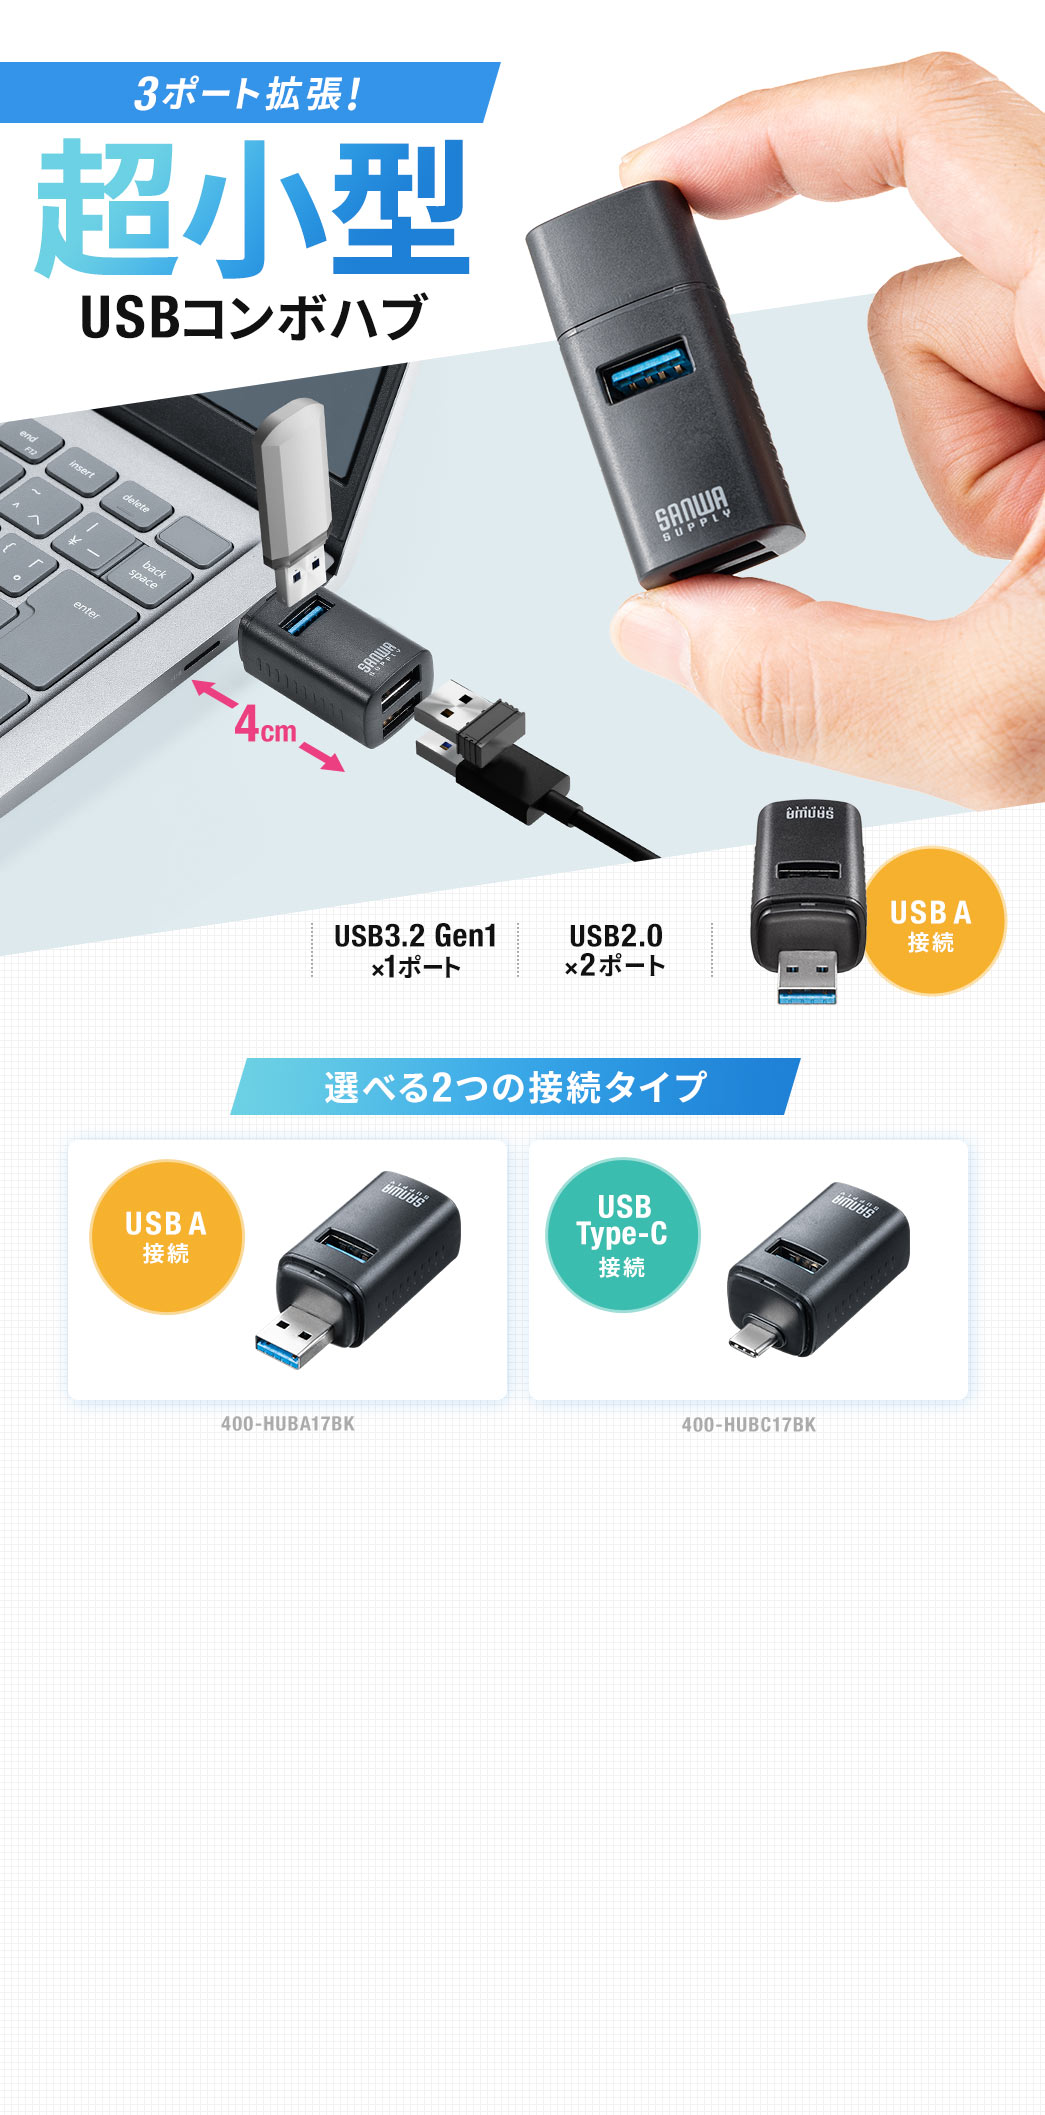 3ポート拡張!超小型 USBコンポハブ